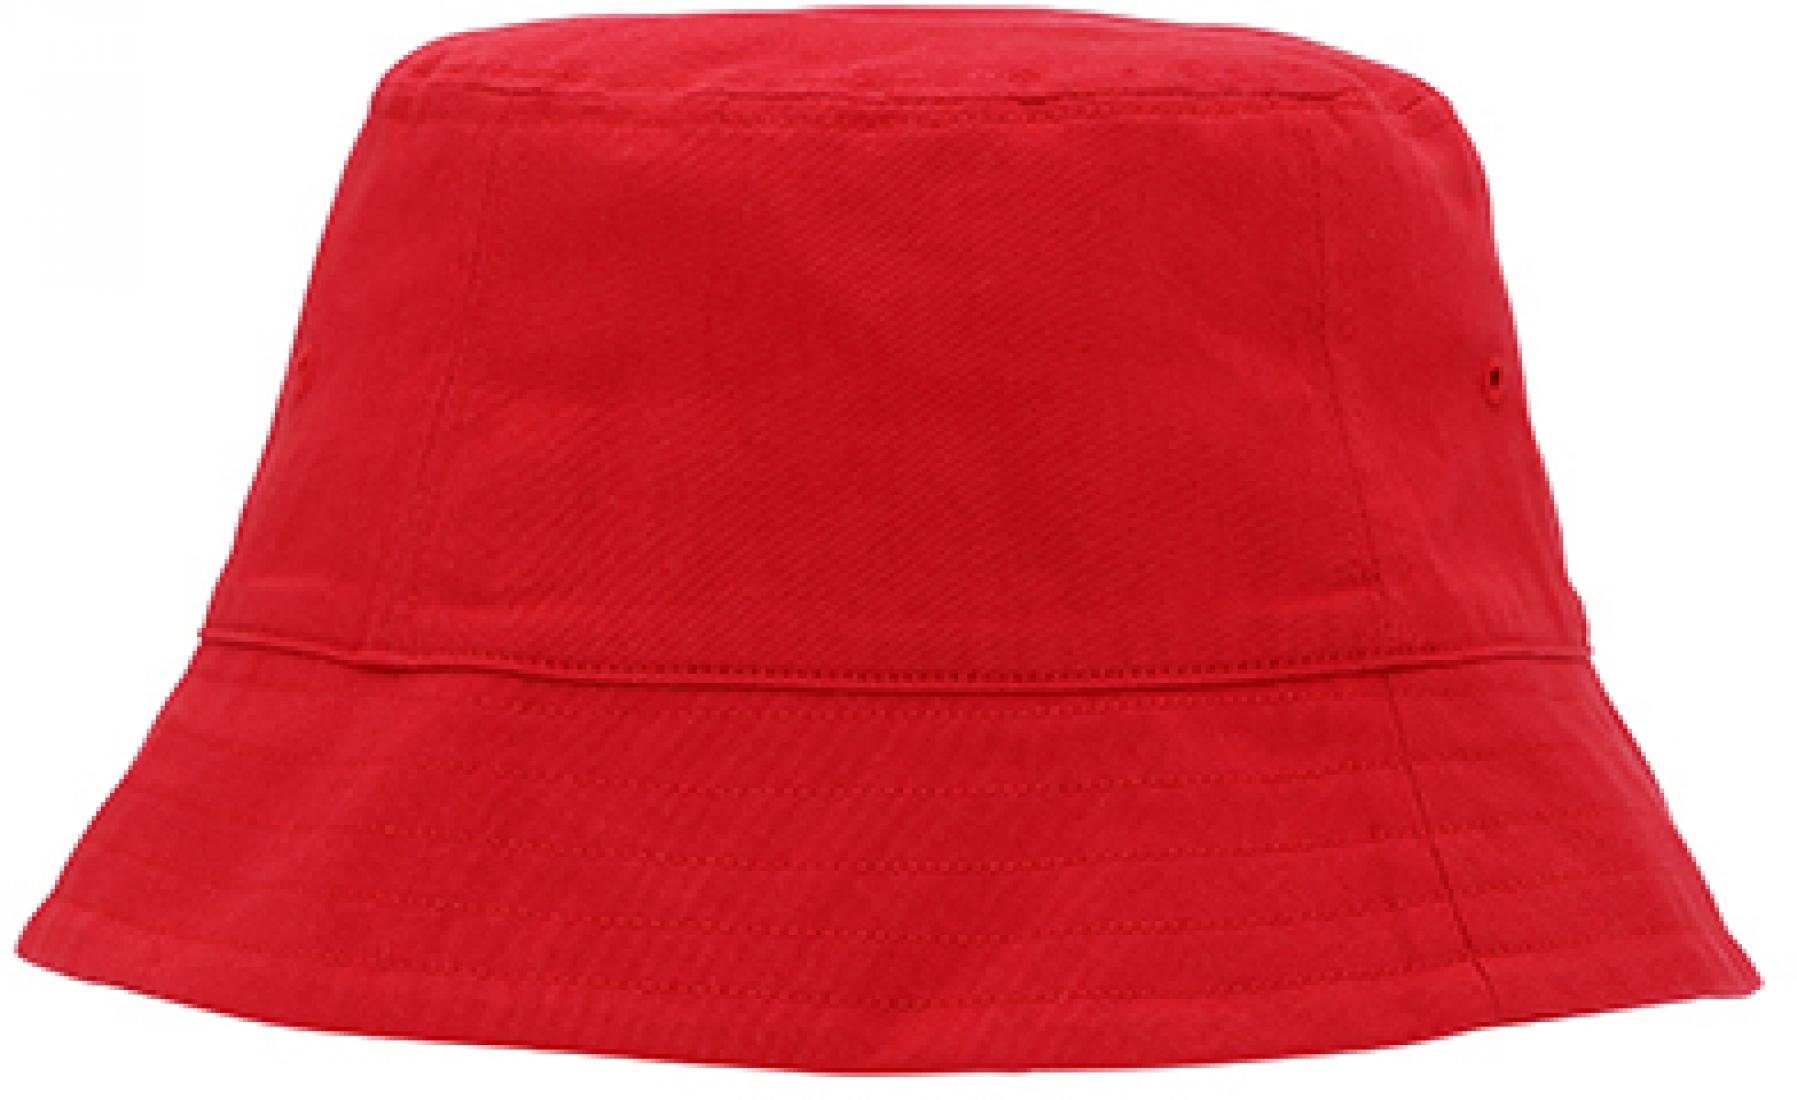 Neutral Outdoorhut Bucket Hat S/M bis M/L